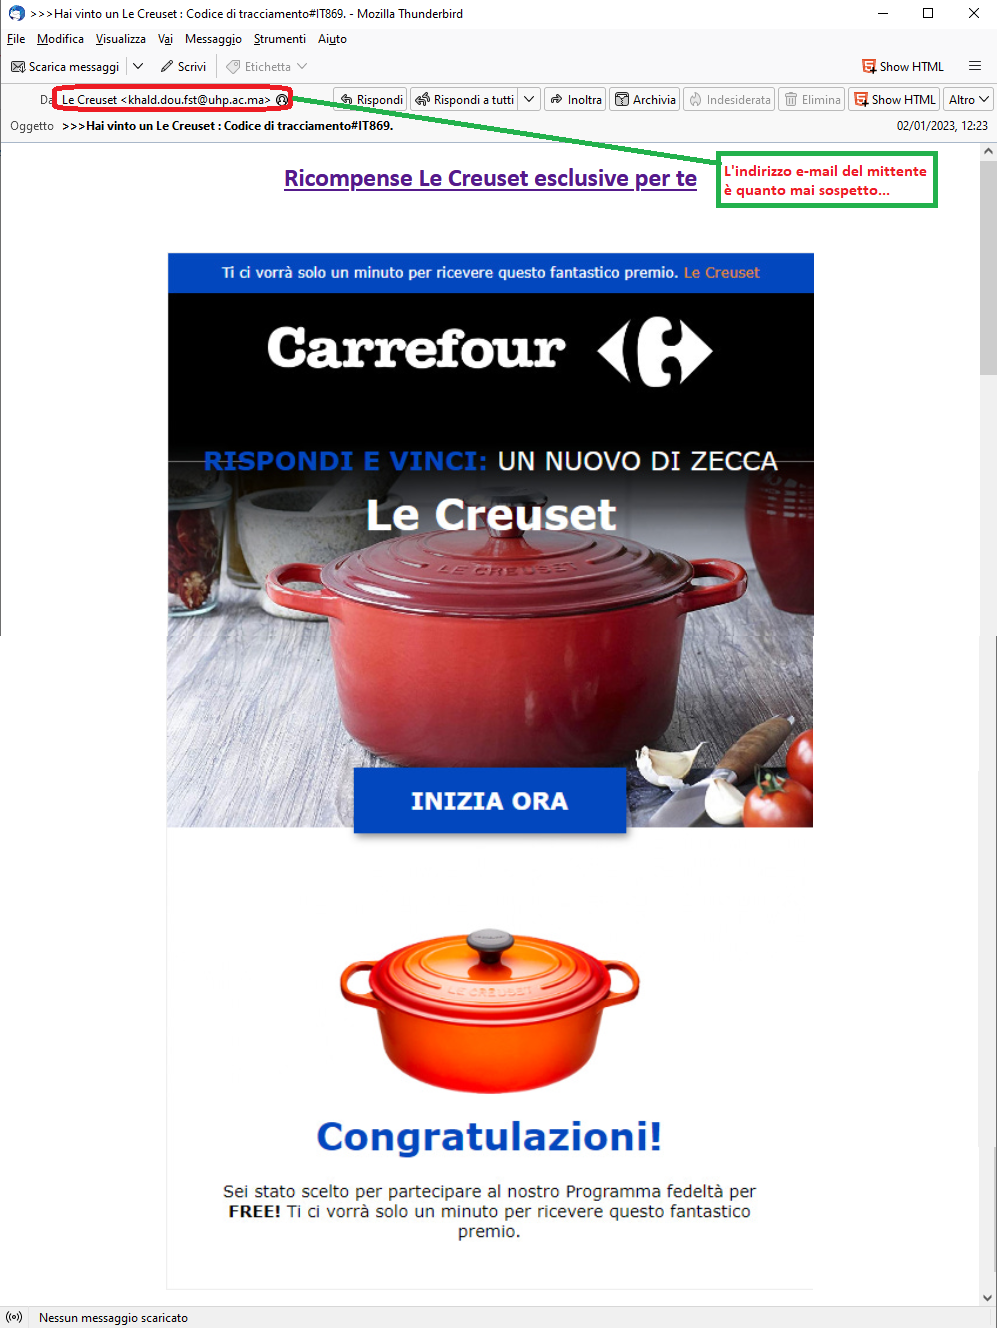 Clicca per ingrandire l'immagine della falsa e-mail che sembra provenire da Carrefour e che segnala la possibilità di vincere un fantastico iPhone 14 Pro...in realtà si tratta di una TRUFFA!